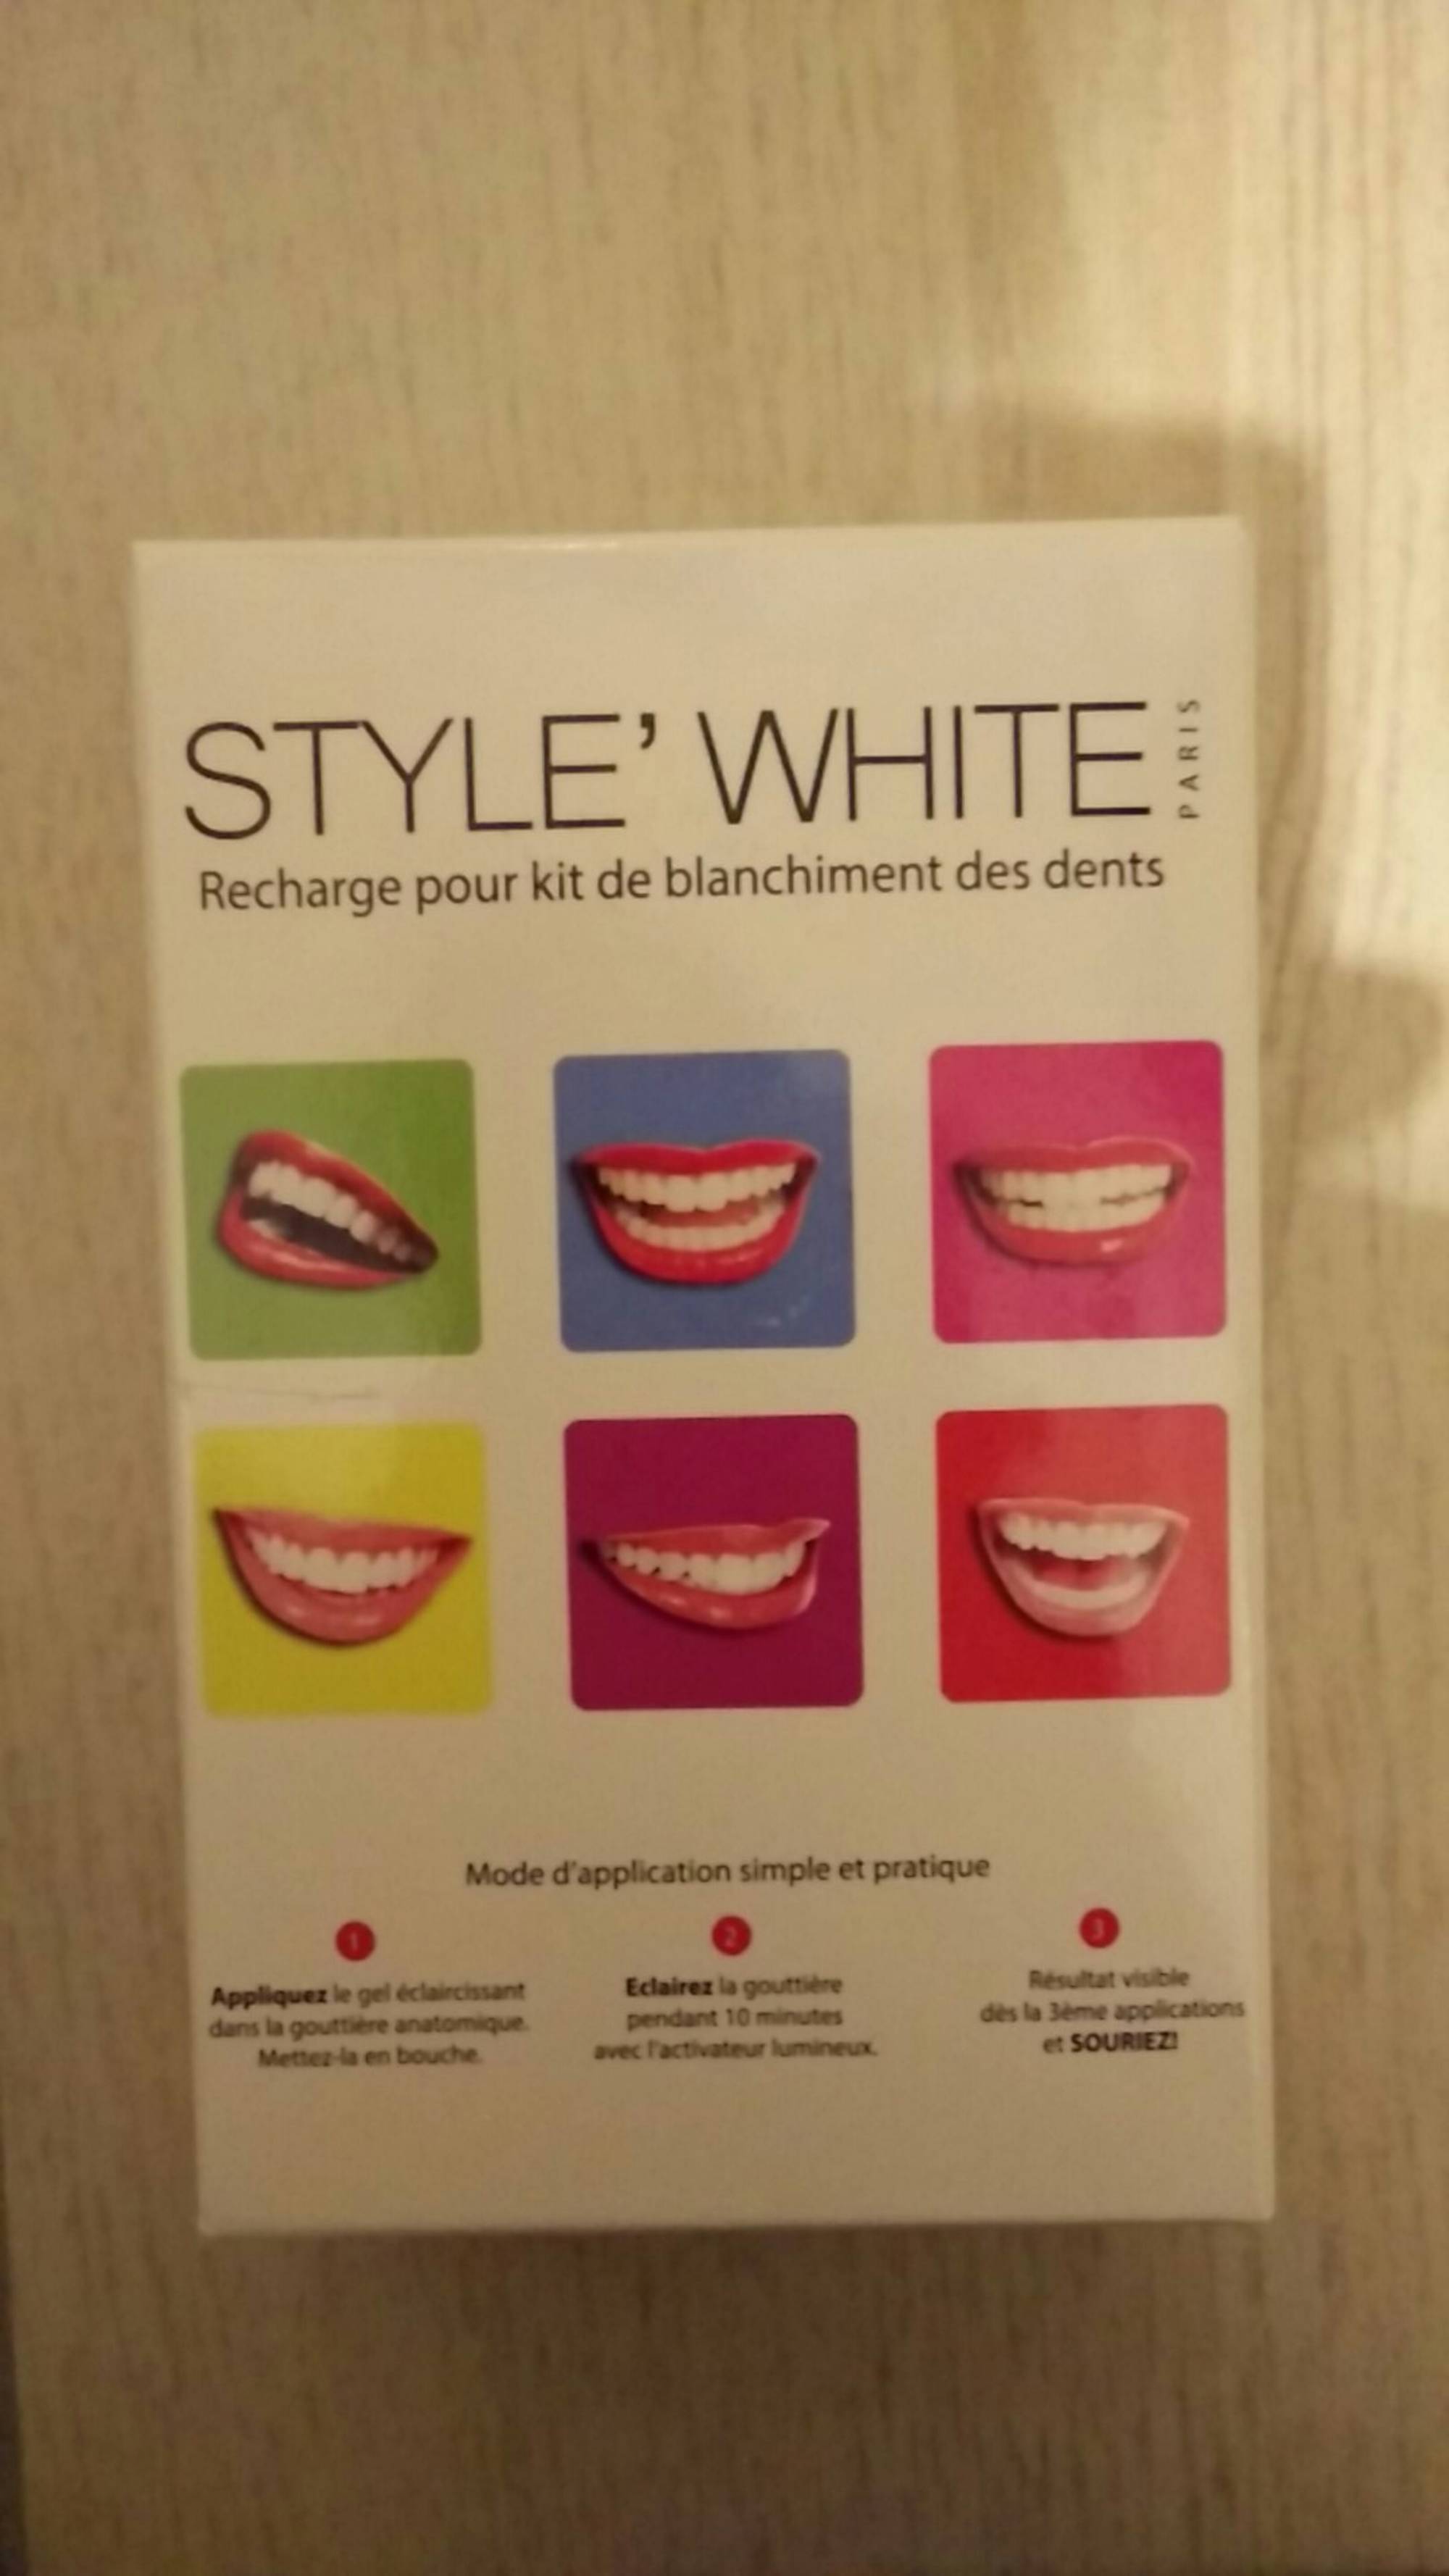 STYLE'WHITE - Recharge pour kit de blanchiment des dents